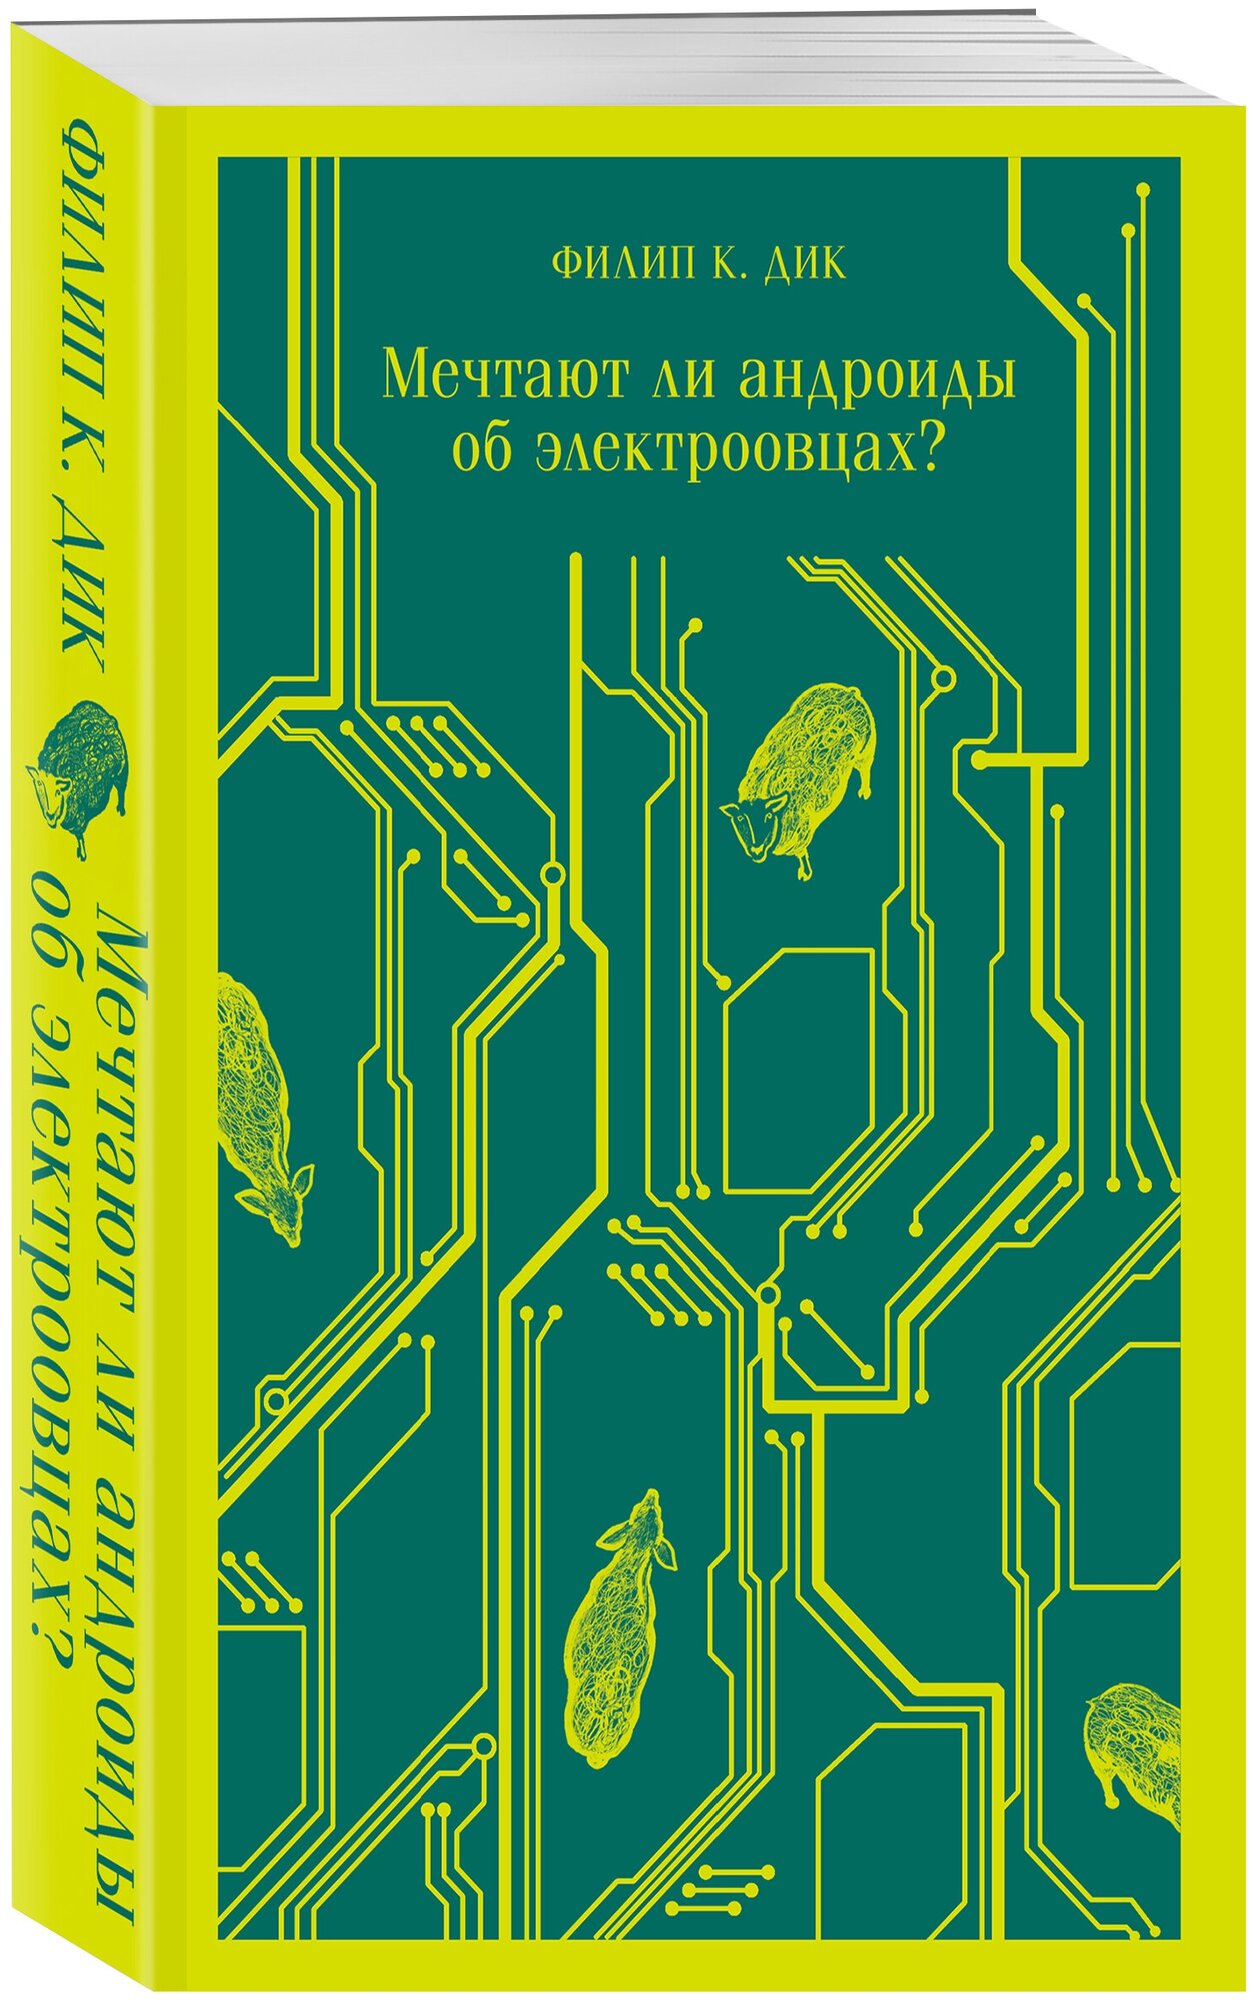 Дик Ф.К. "Мечтают ли андроиды об электроовцах?" — купить в интернет-магазине по низкой цене на Яндекс Маркете